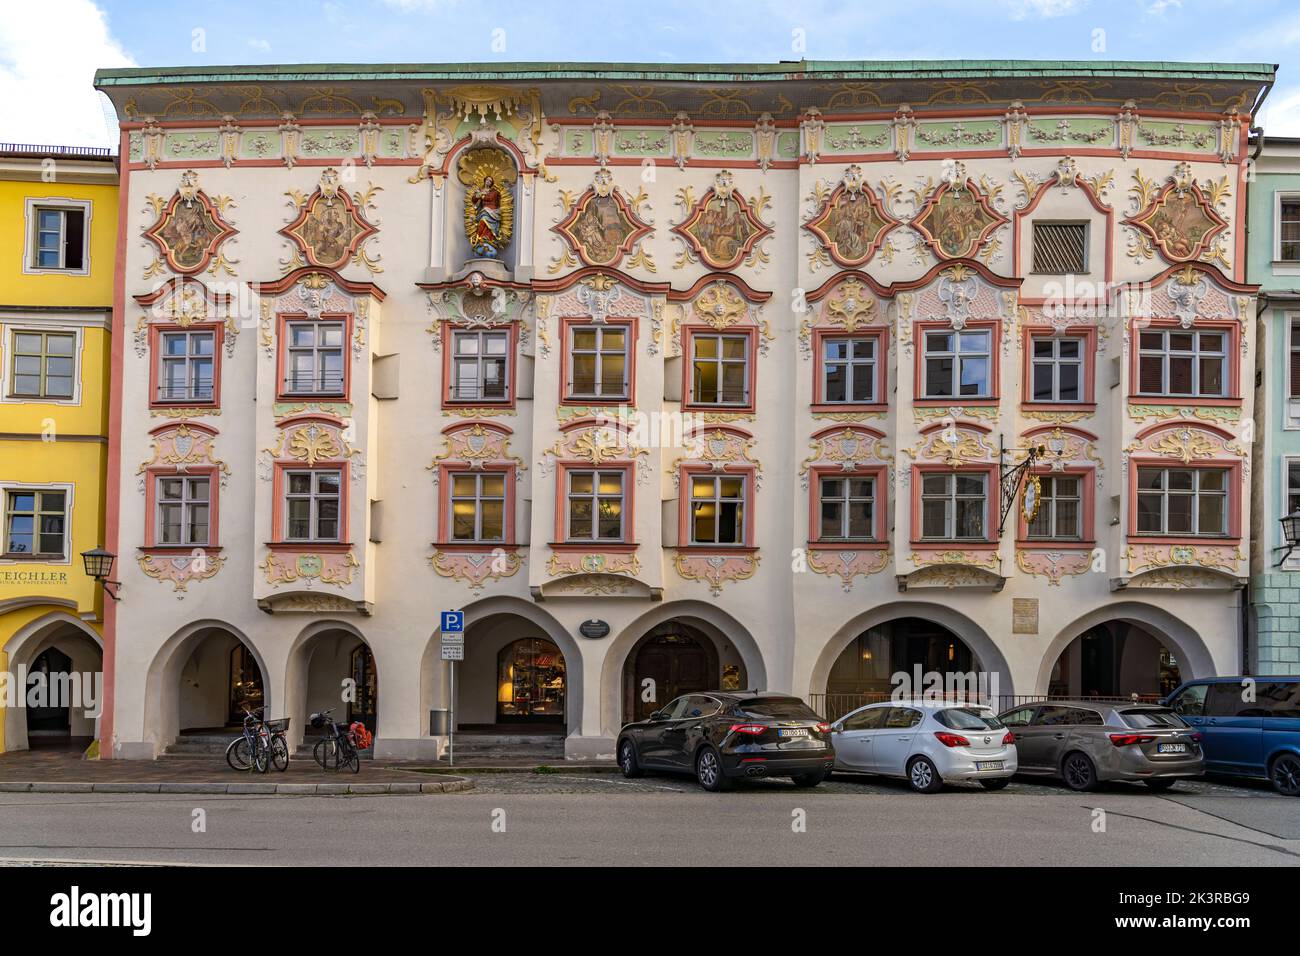 Rokoko-Fassade des Kernhaus in Wasserburg am Inn, Bayern, Deutschland |  Rococo facade of the Kernhaus in Wasserburg am Inn, Bavaria, Gemany Stock Photo